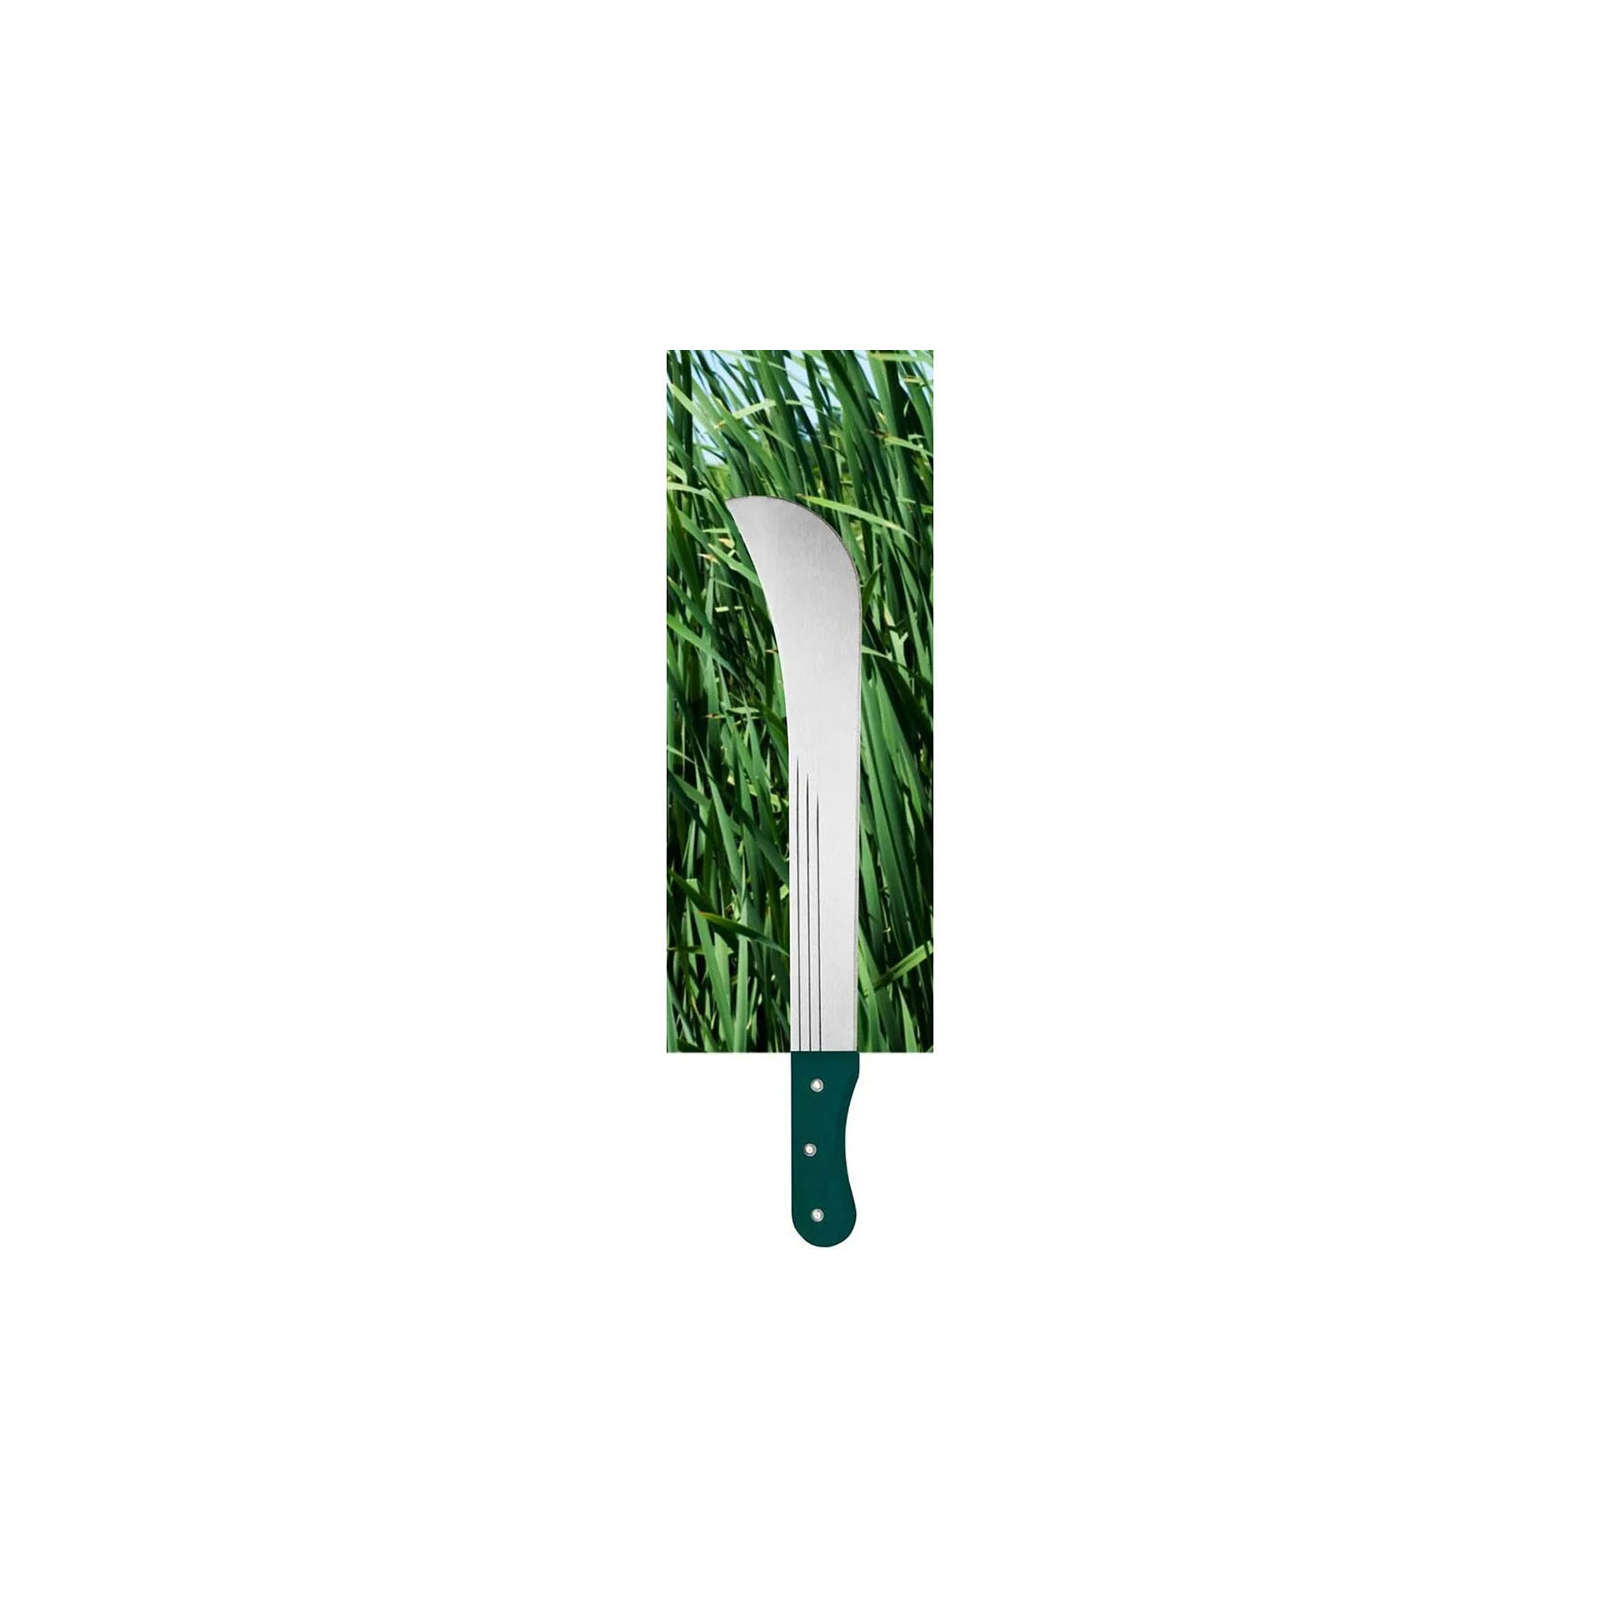 Нож Verto мачете садовый 19", 610мм, лезвие 480мм, 0.5кг (15G190) изображение 2